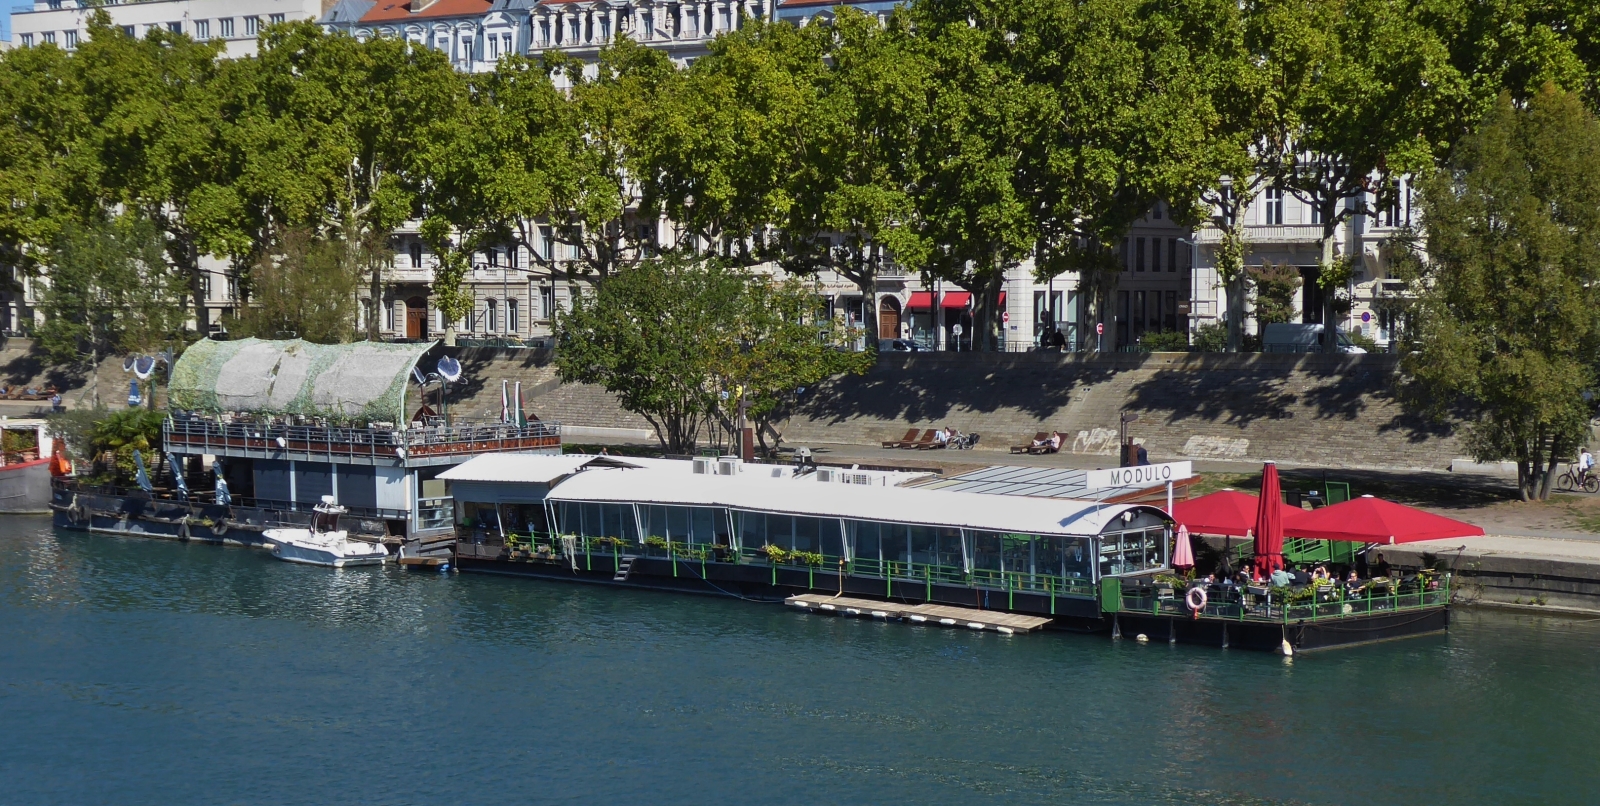 Restaurantschiff  Modulo liegt am Ufer der Rhone in Lyon vor Anker. 09.2022